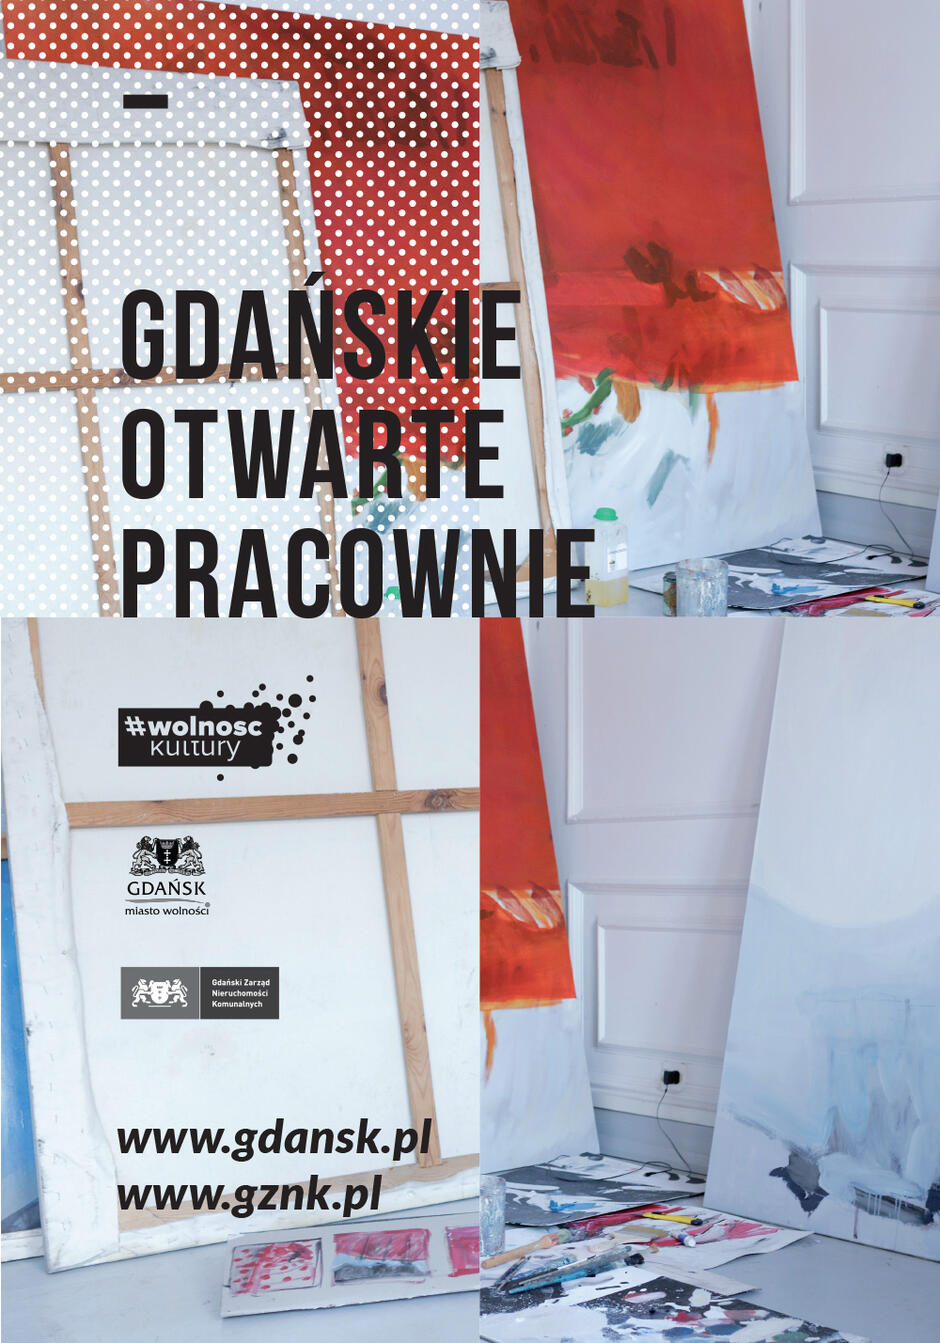 Plakat promujący Gdańskie Otwarte Pracownie